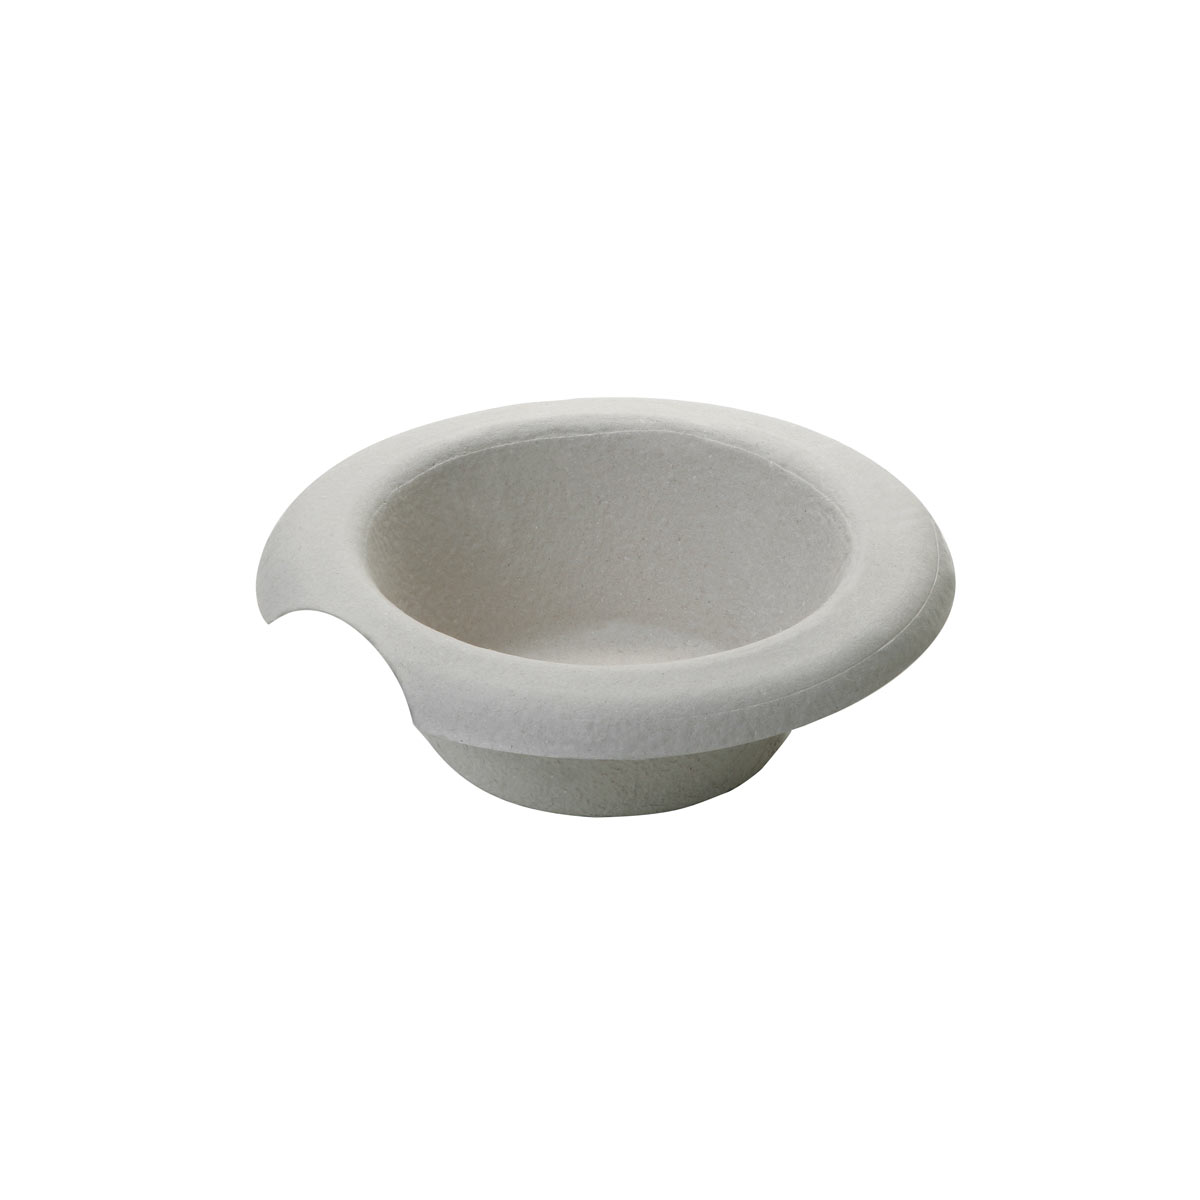 General purpose bowl 1L